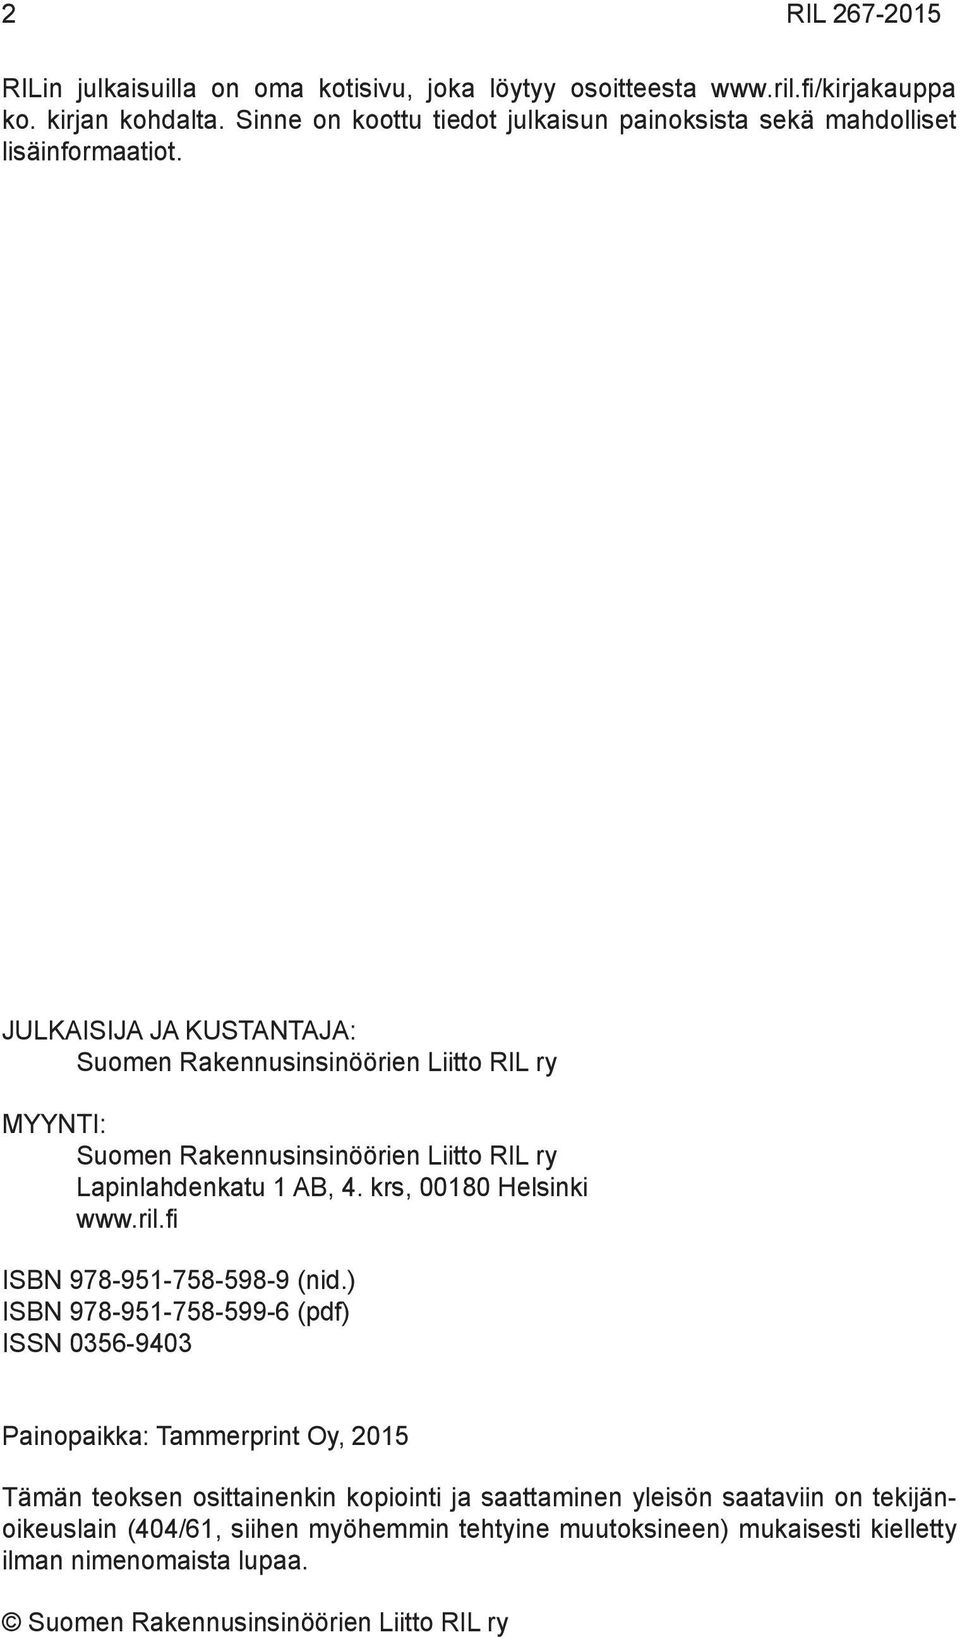 JULKAISIJA JA KUSTANTAJA: Suomen Rakennusinsinöörien Liitto RIL ry MYYNTI: Suomen Rakennusinsinöörien Liitto RIL ry Lapinlahdenkatu 1 AB, 4. krs, 00180 Helsinki www.ril.